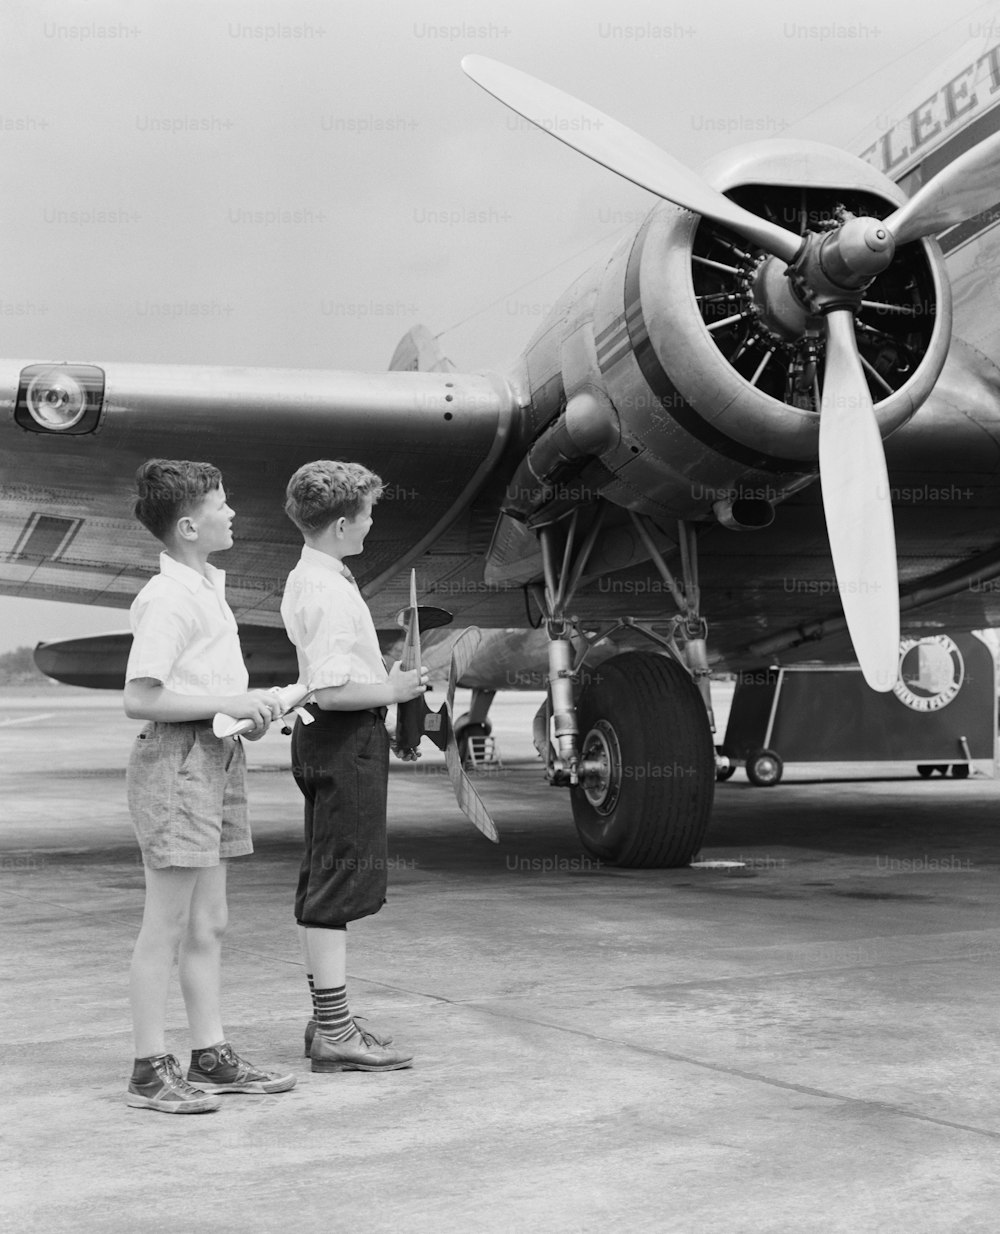 ESTADOS UNIDOS - POR VOLTA DE 1940: Dois meninos de pé ao lado de um avião a hélice, segurando um avião de brinquedo.